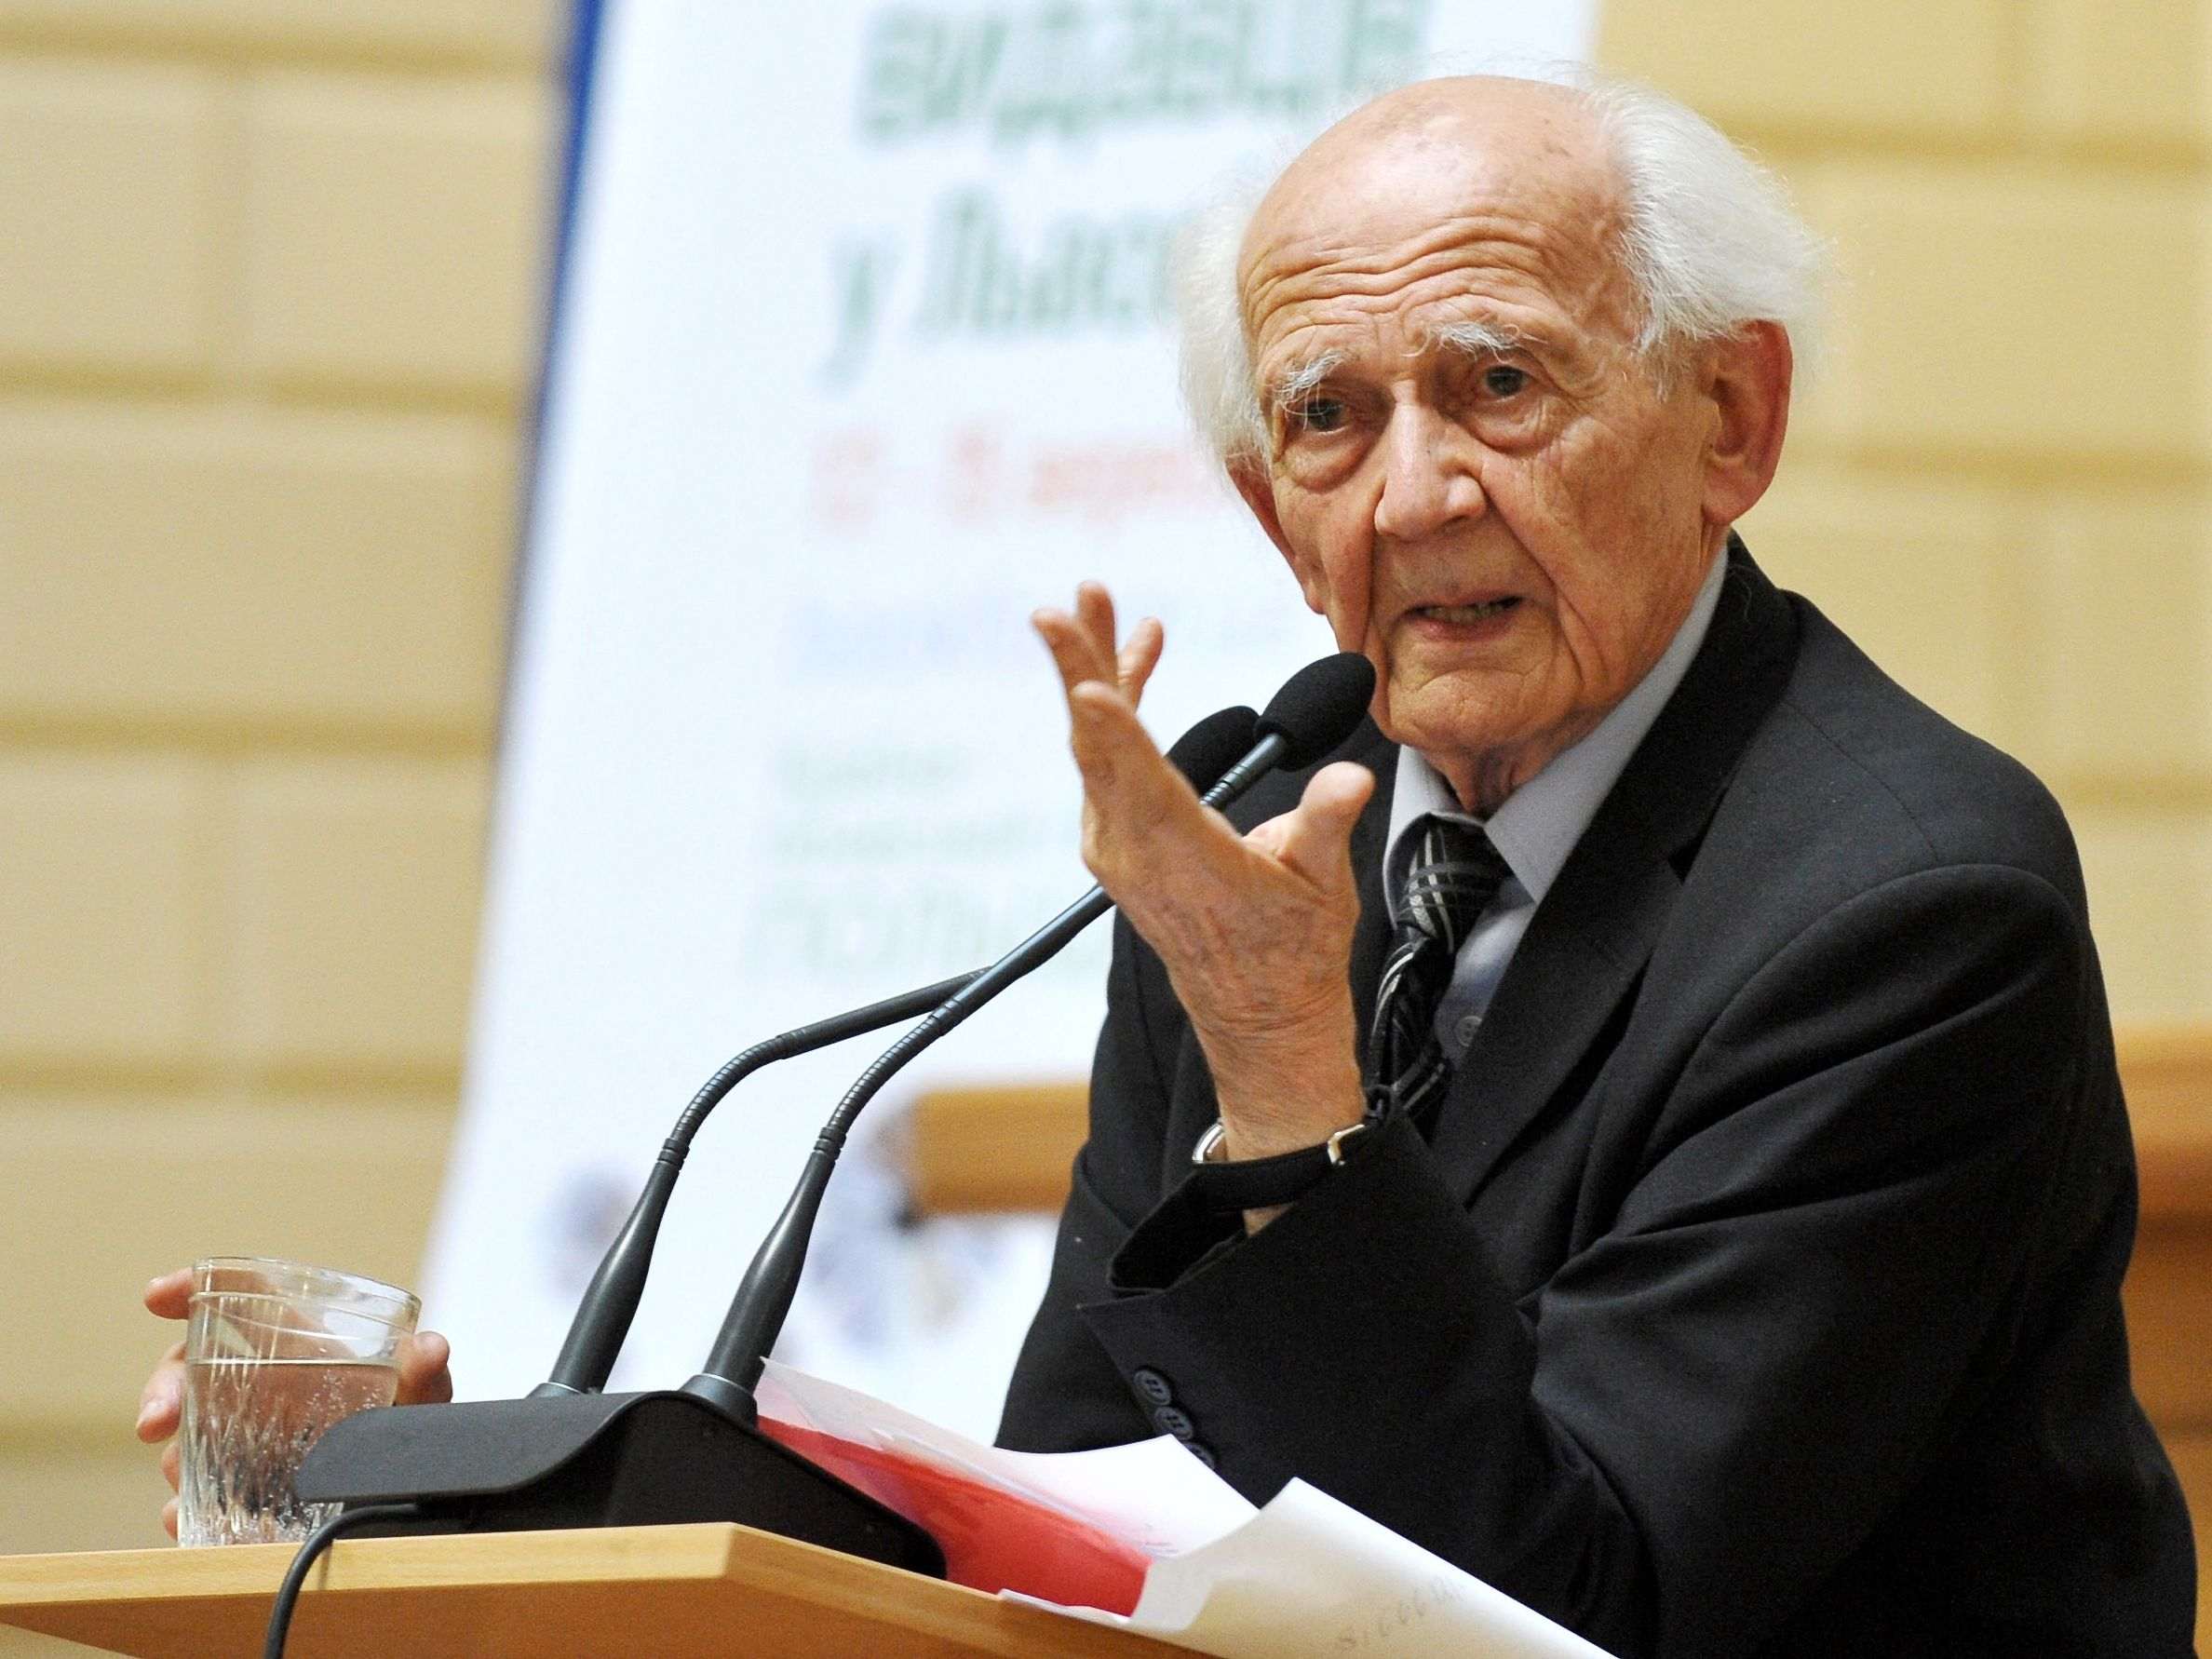 Mor el sociòleg Zygmunt Bauman als 91 anys